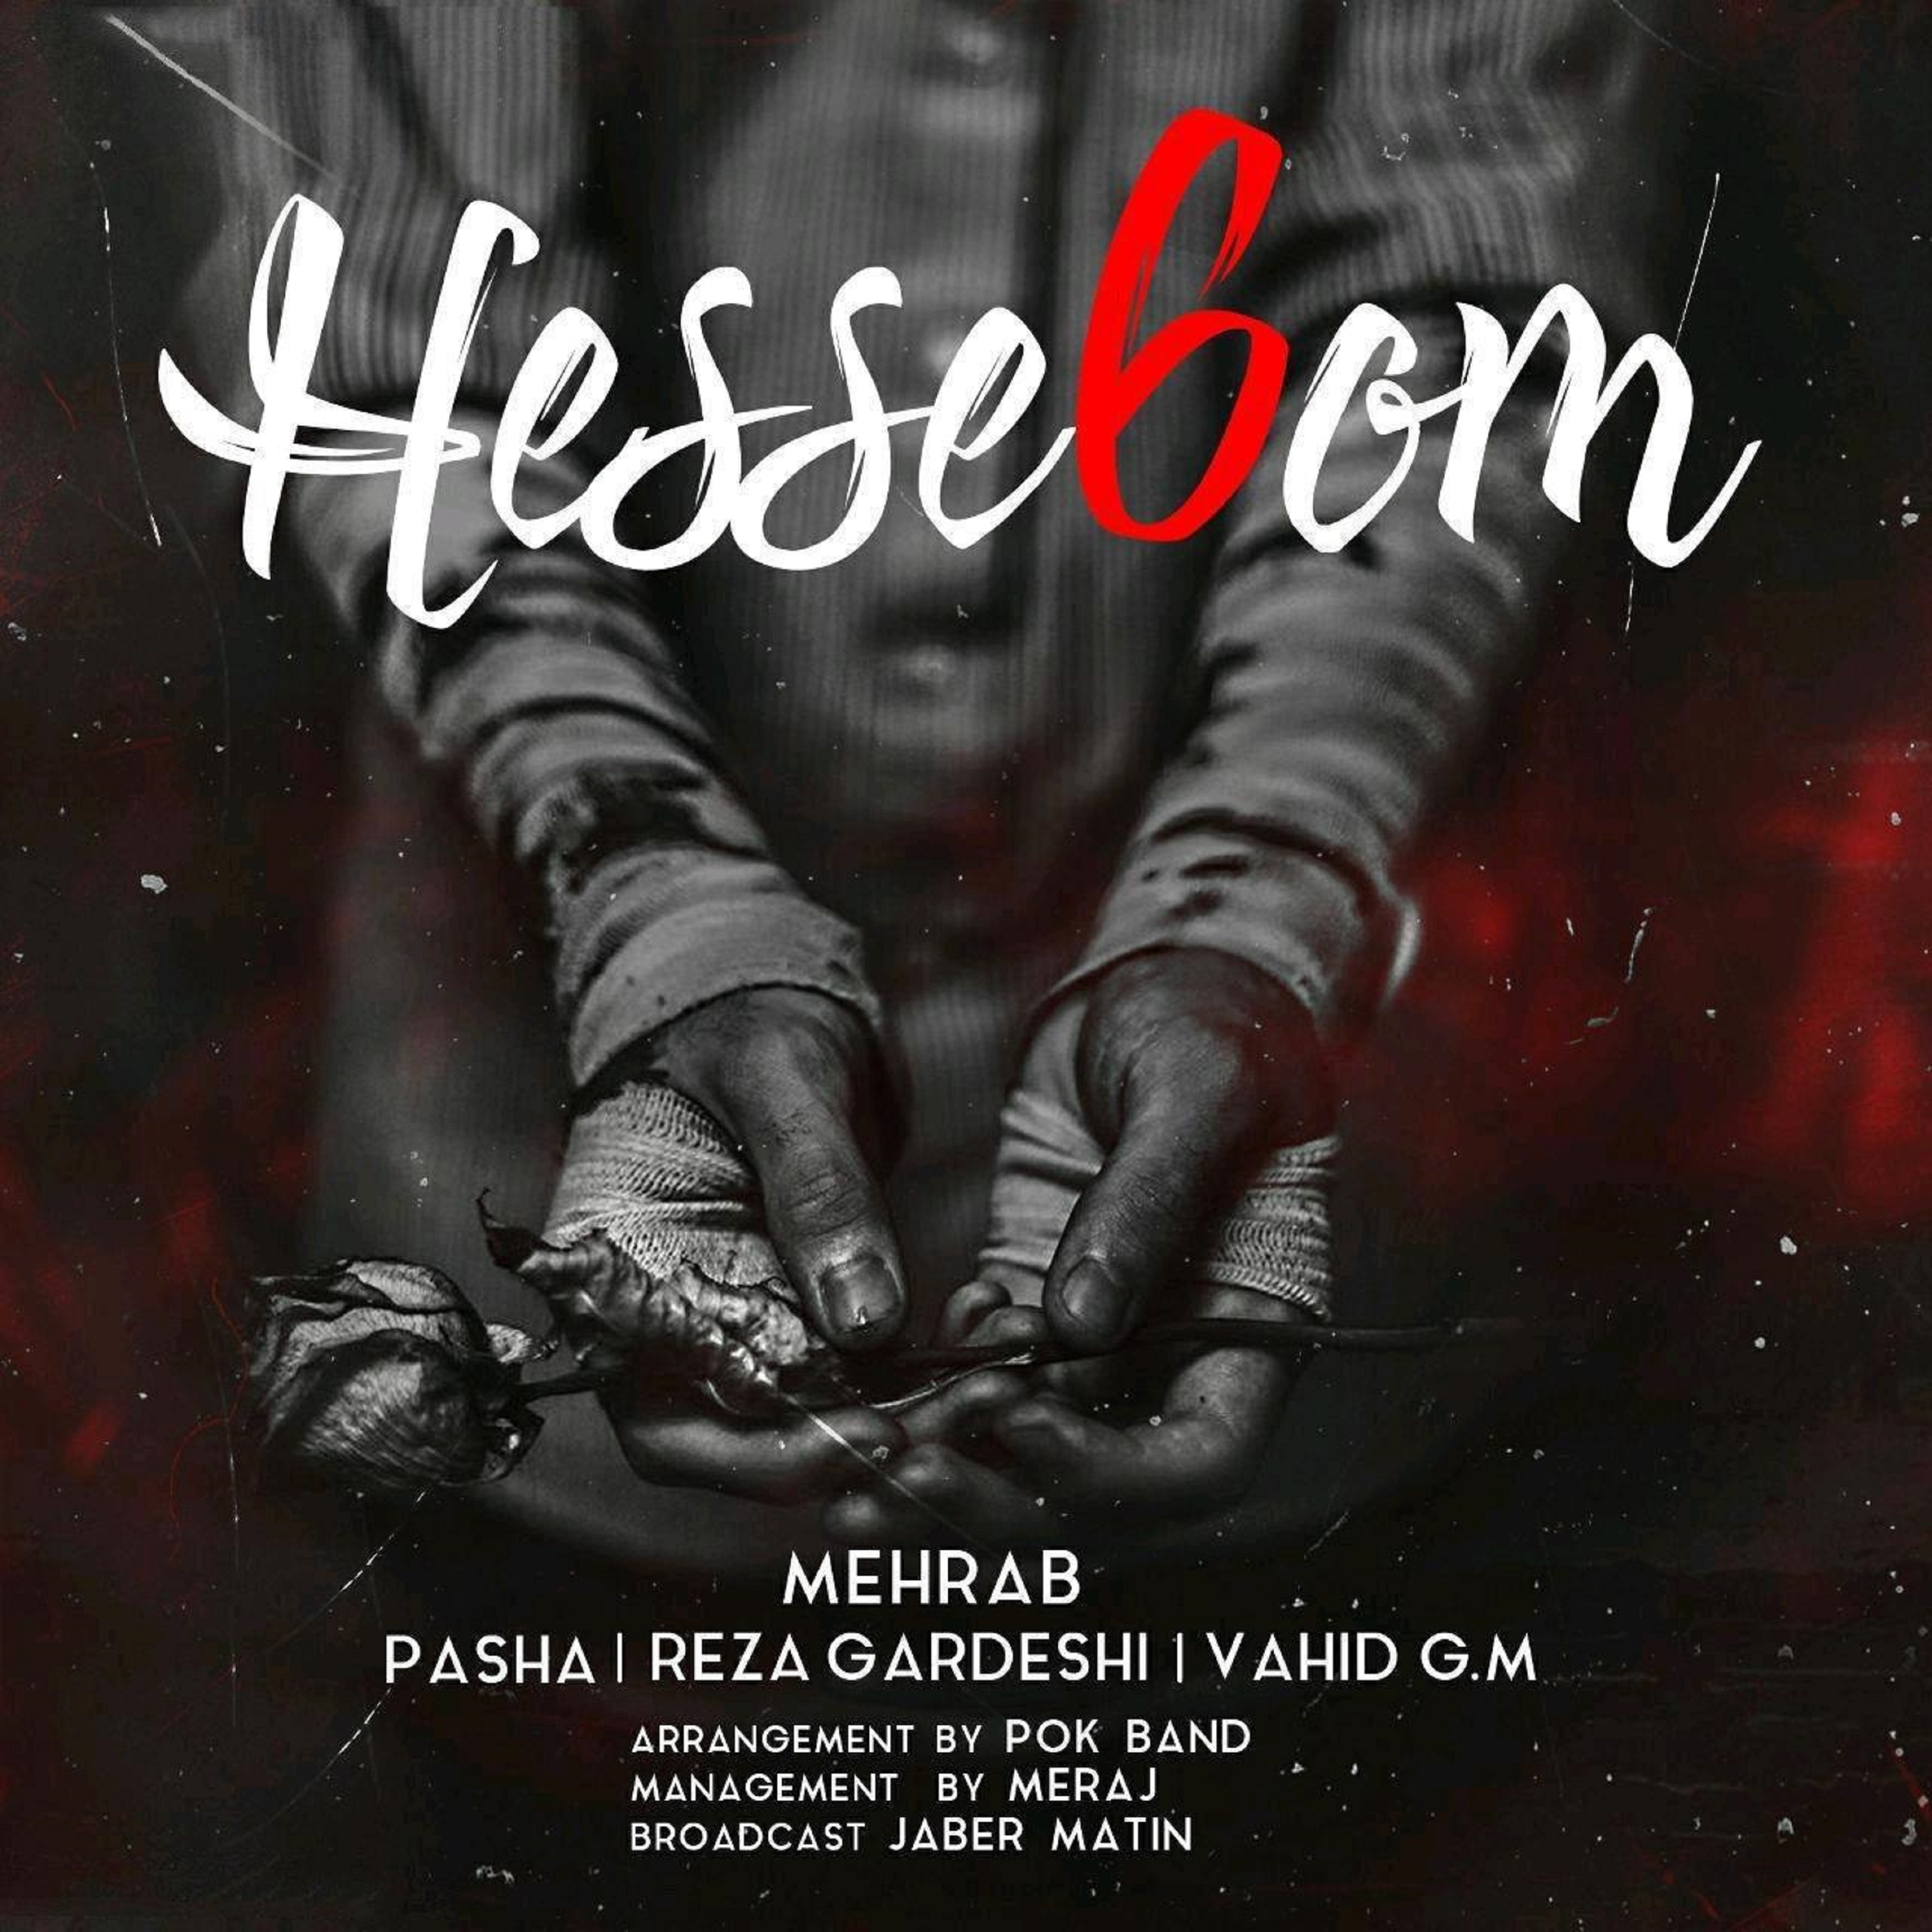  دانلود آهنگ جدید مهراب - حس ششم | Download New Music By Mehrab - Hesse 6om (feat. Pasha, Reza Gardeshi & Vahid GM)